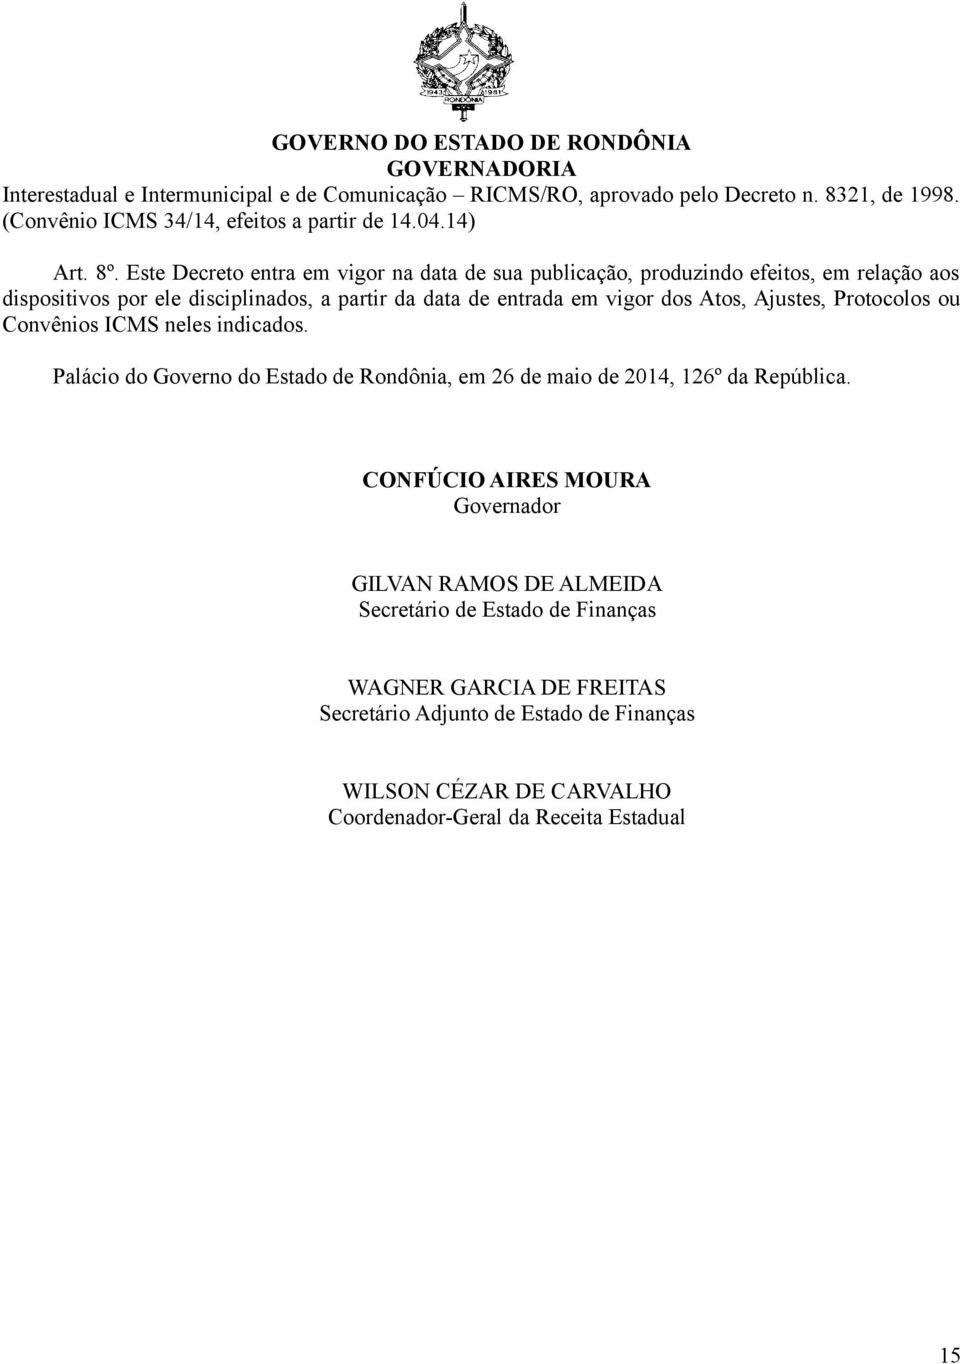 Ajustes, Protocolos ou Convênios ICMS neles indicados. Palácio do Governo do Estado de Rondônia, em 26 de maio de 2014, 126º da República.